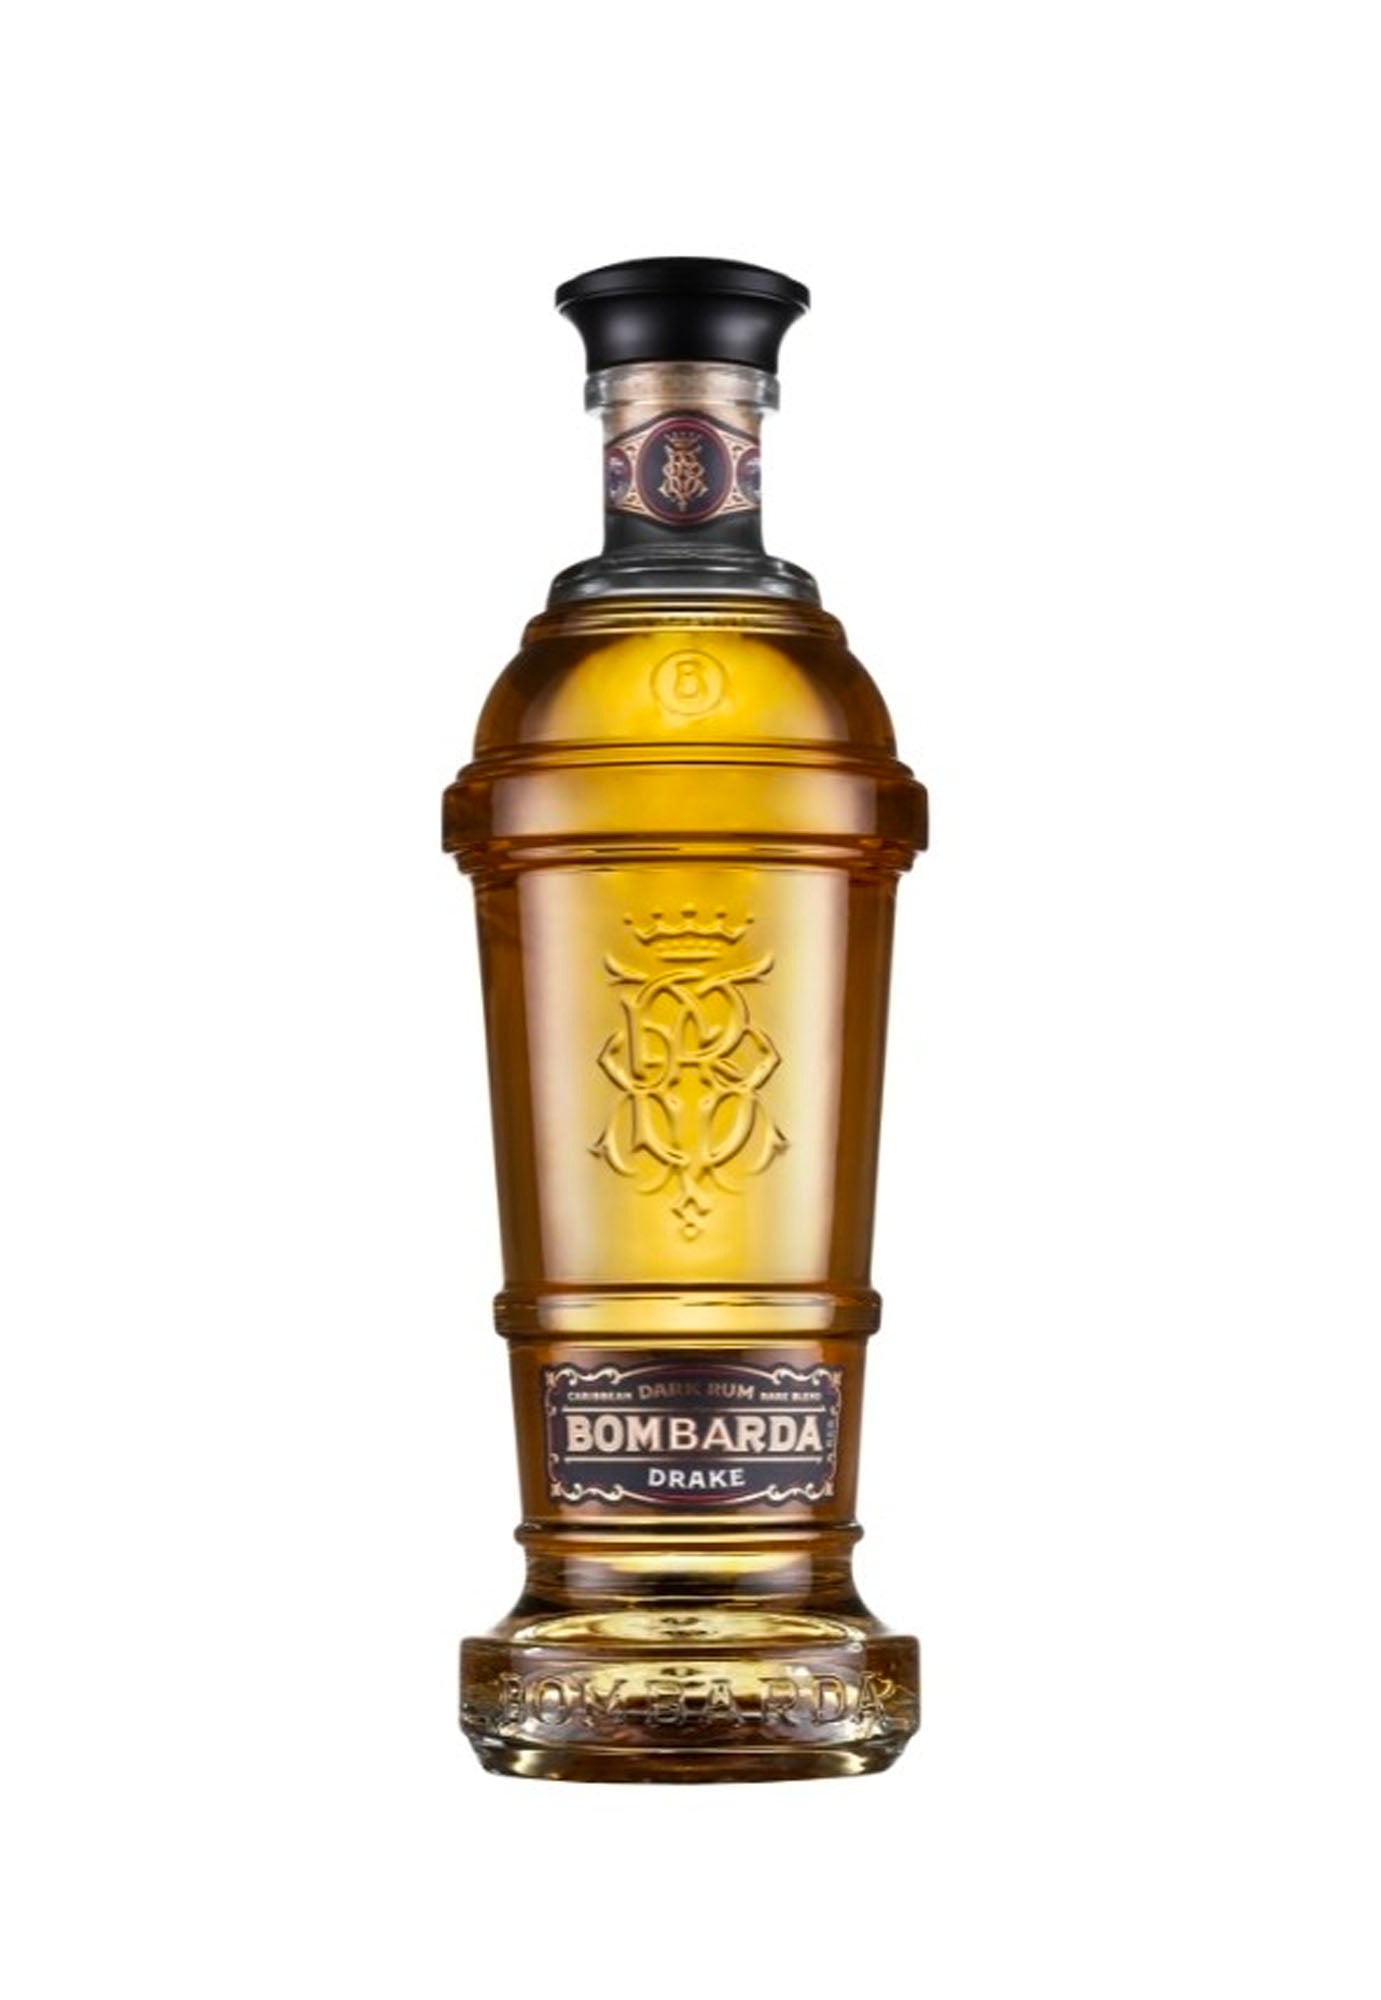 Bombarda Drake Rum